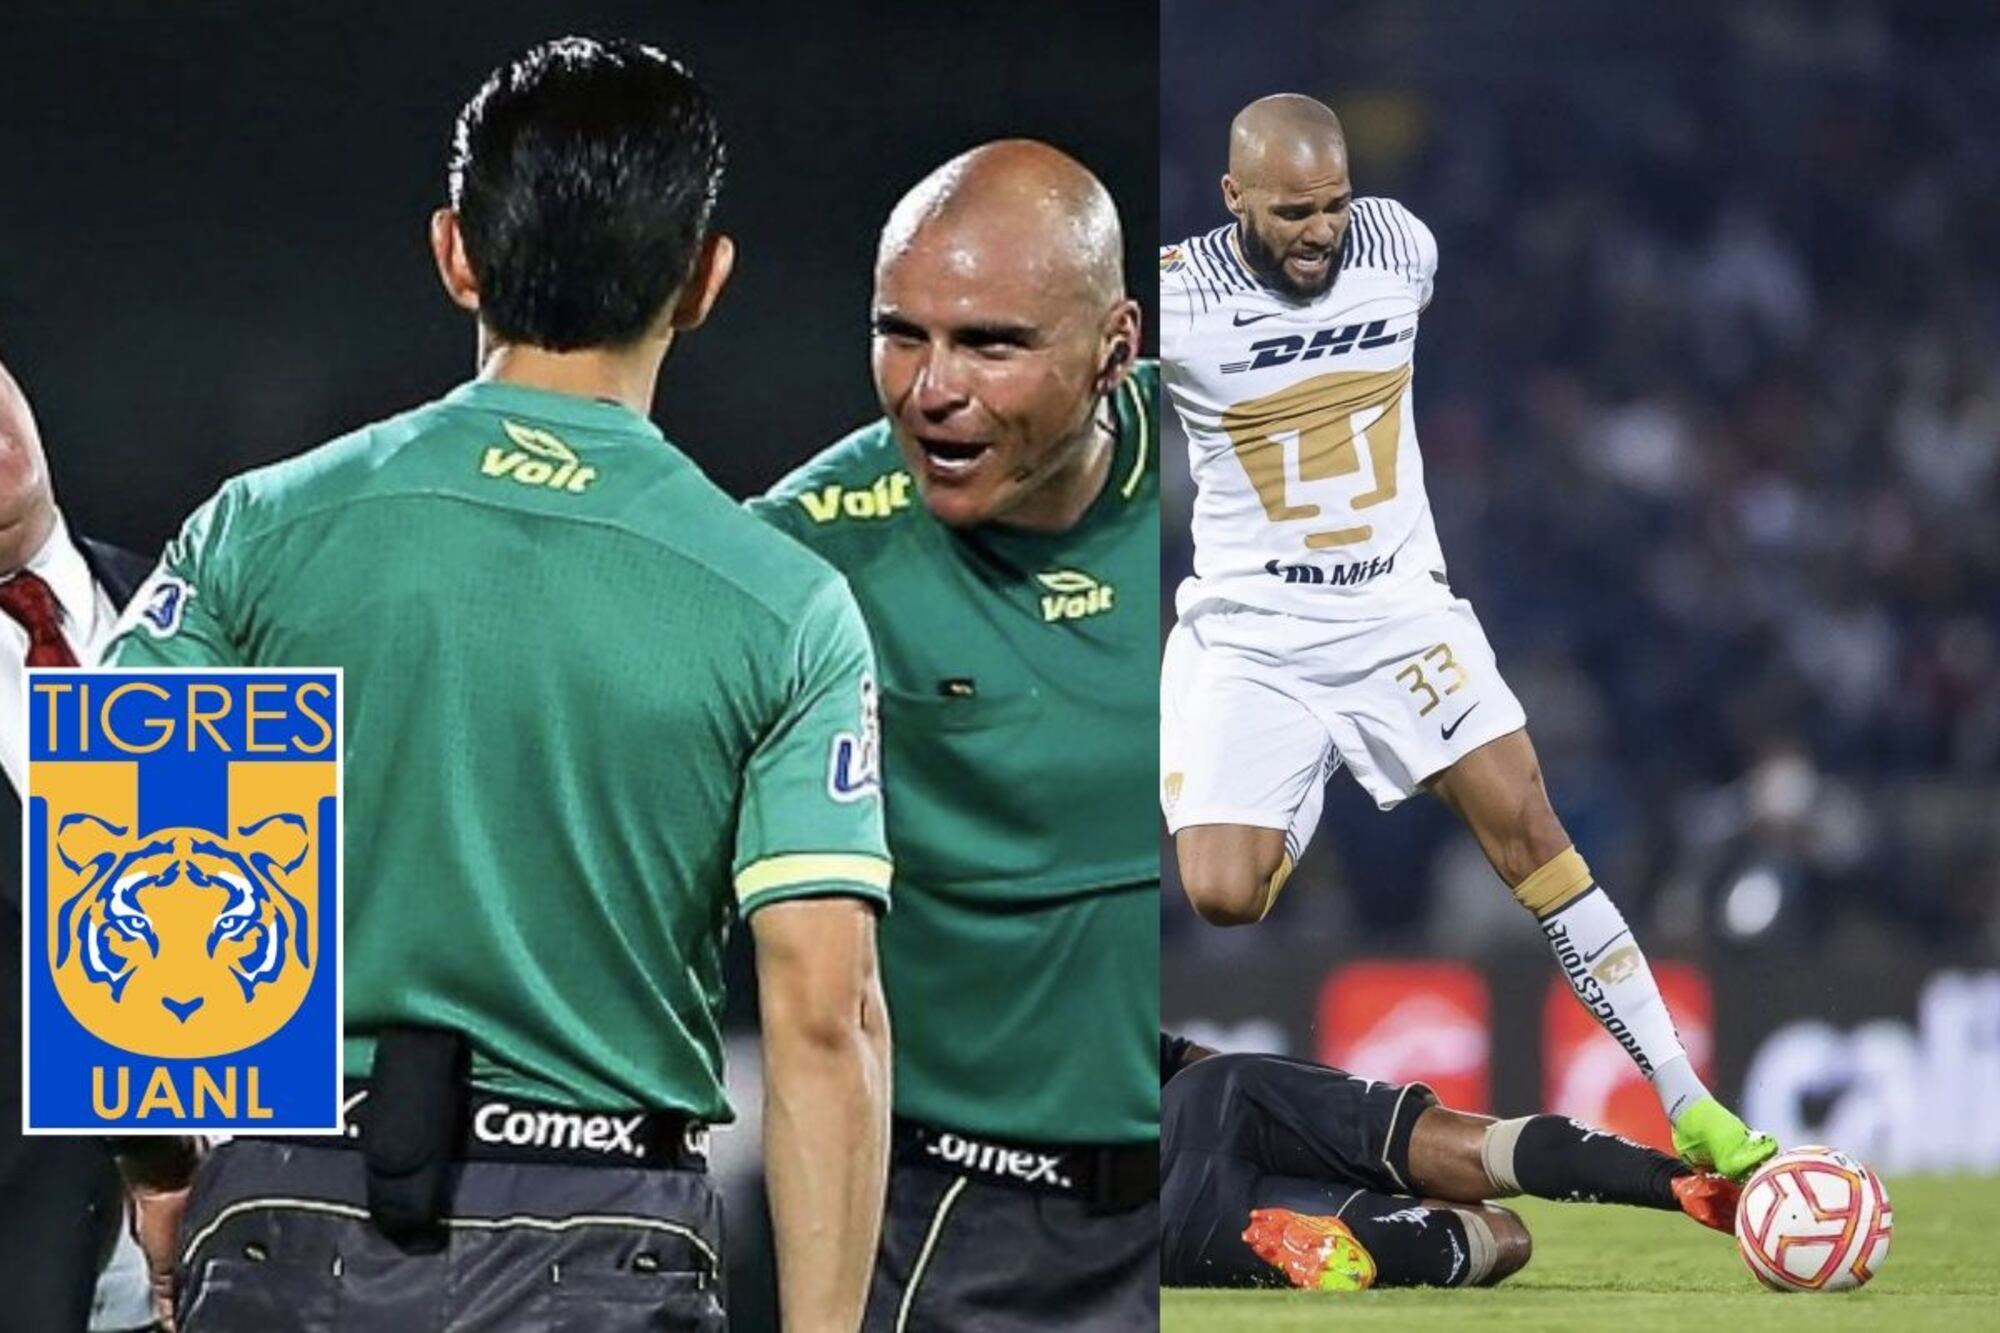 El árbitro que llamó "puñ..." a Miguel Herrera en Tigres, todo por Dani Alves